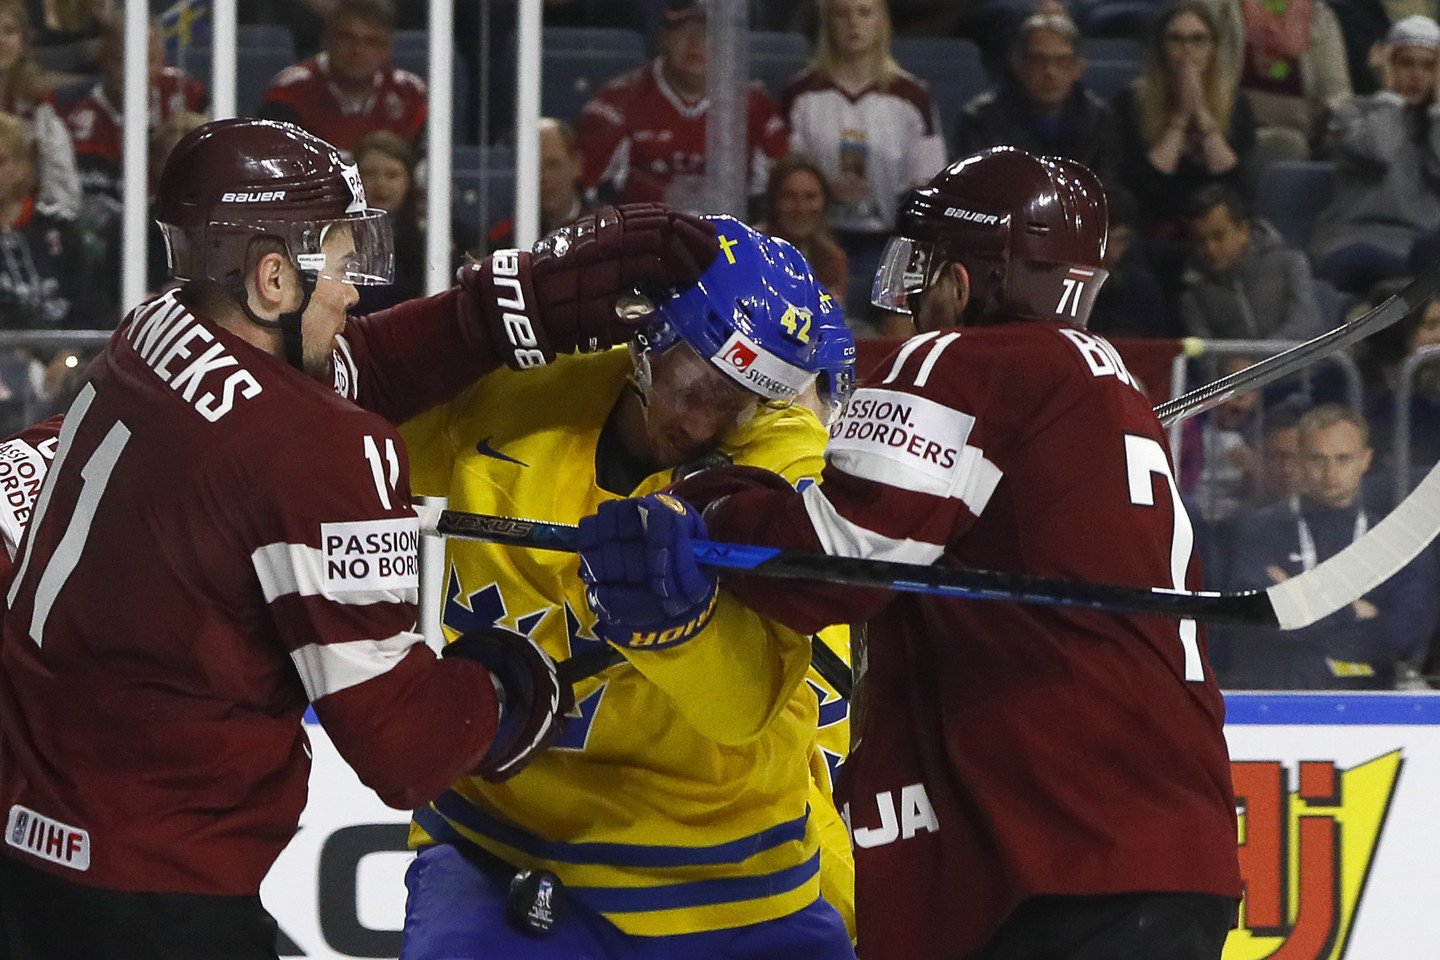  Švedijos ir Latvijos rinktinių rungtynės.<br> Reuters/Scanpix nuotr.